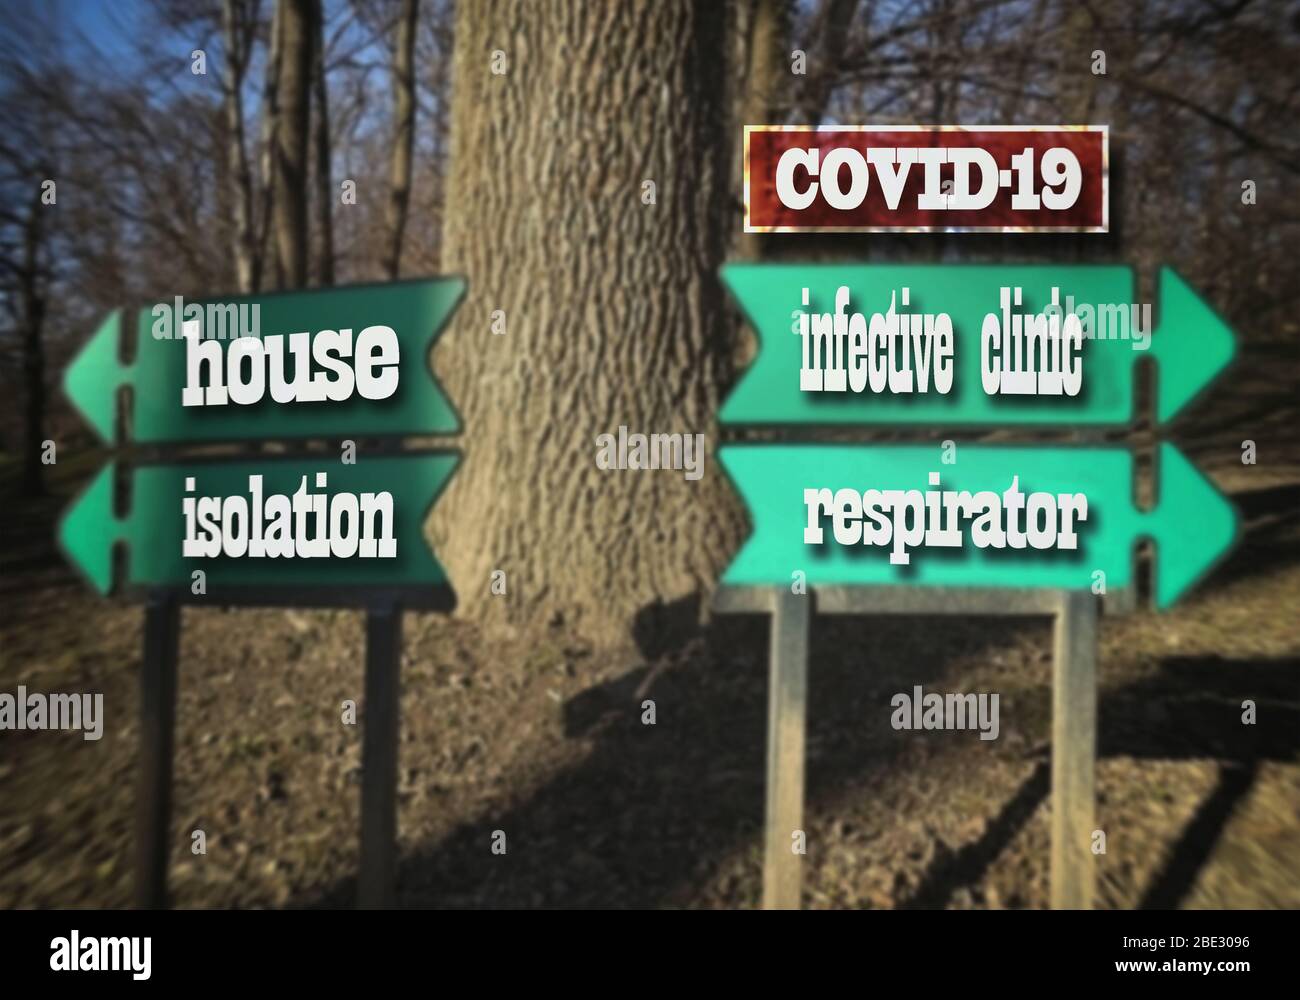 COVID-19. Indicazioni per il parco: Casa - isolamento, clinica infettiva - respiratore, immagine sfocata. Foto Stock